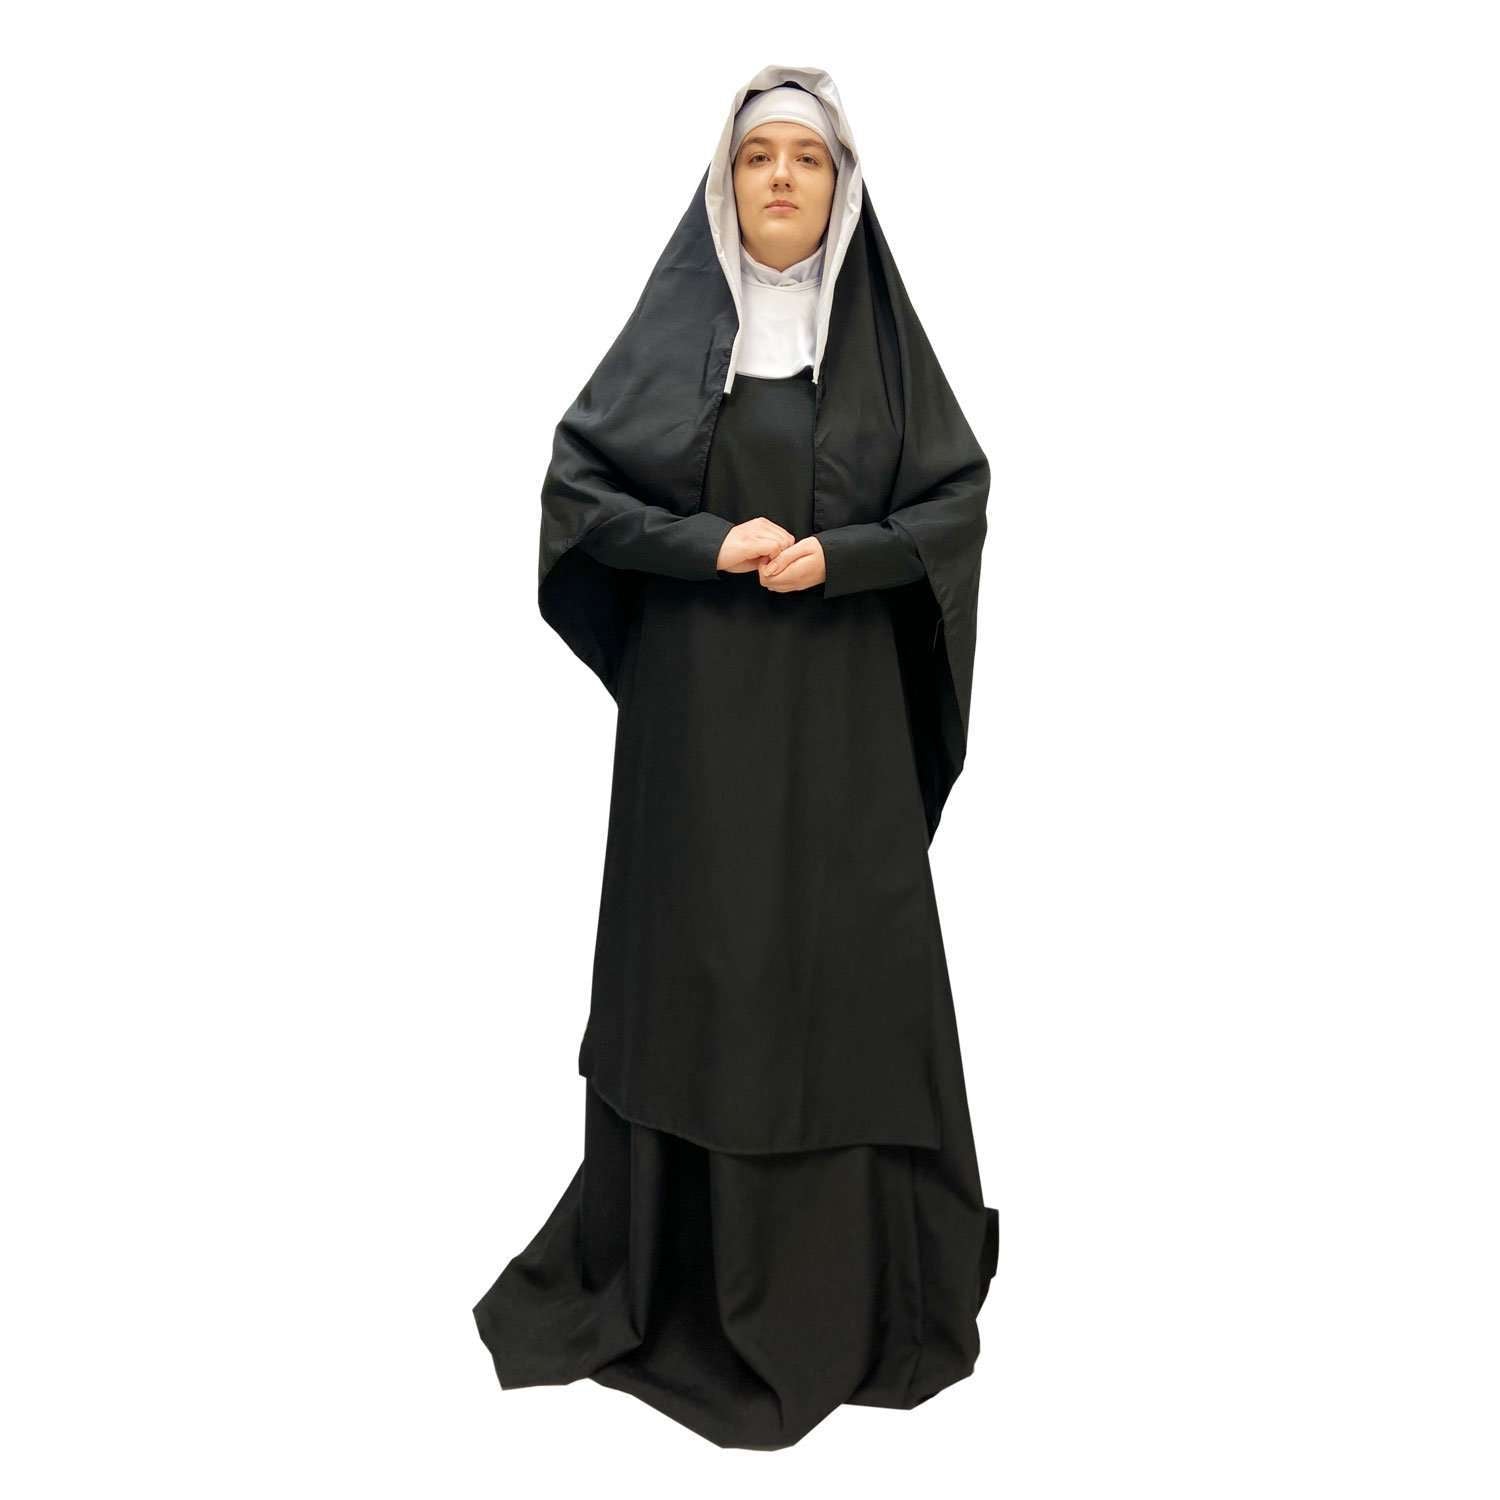 Religious Nun Premium Quality Adult Costume